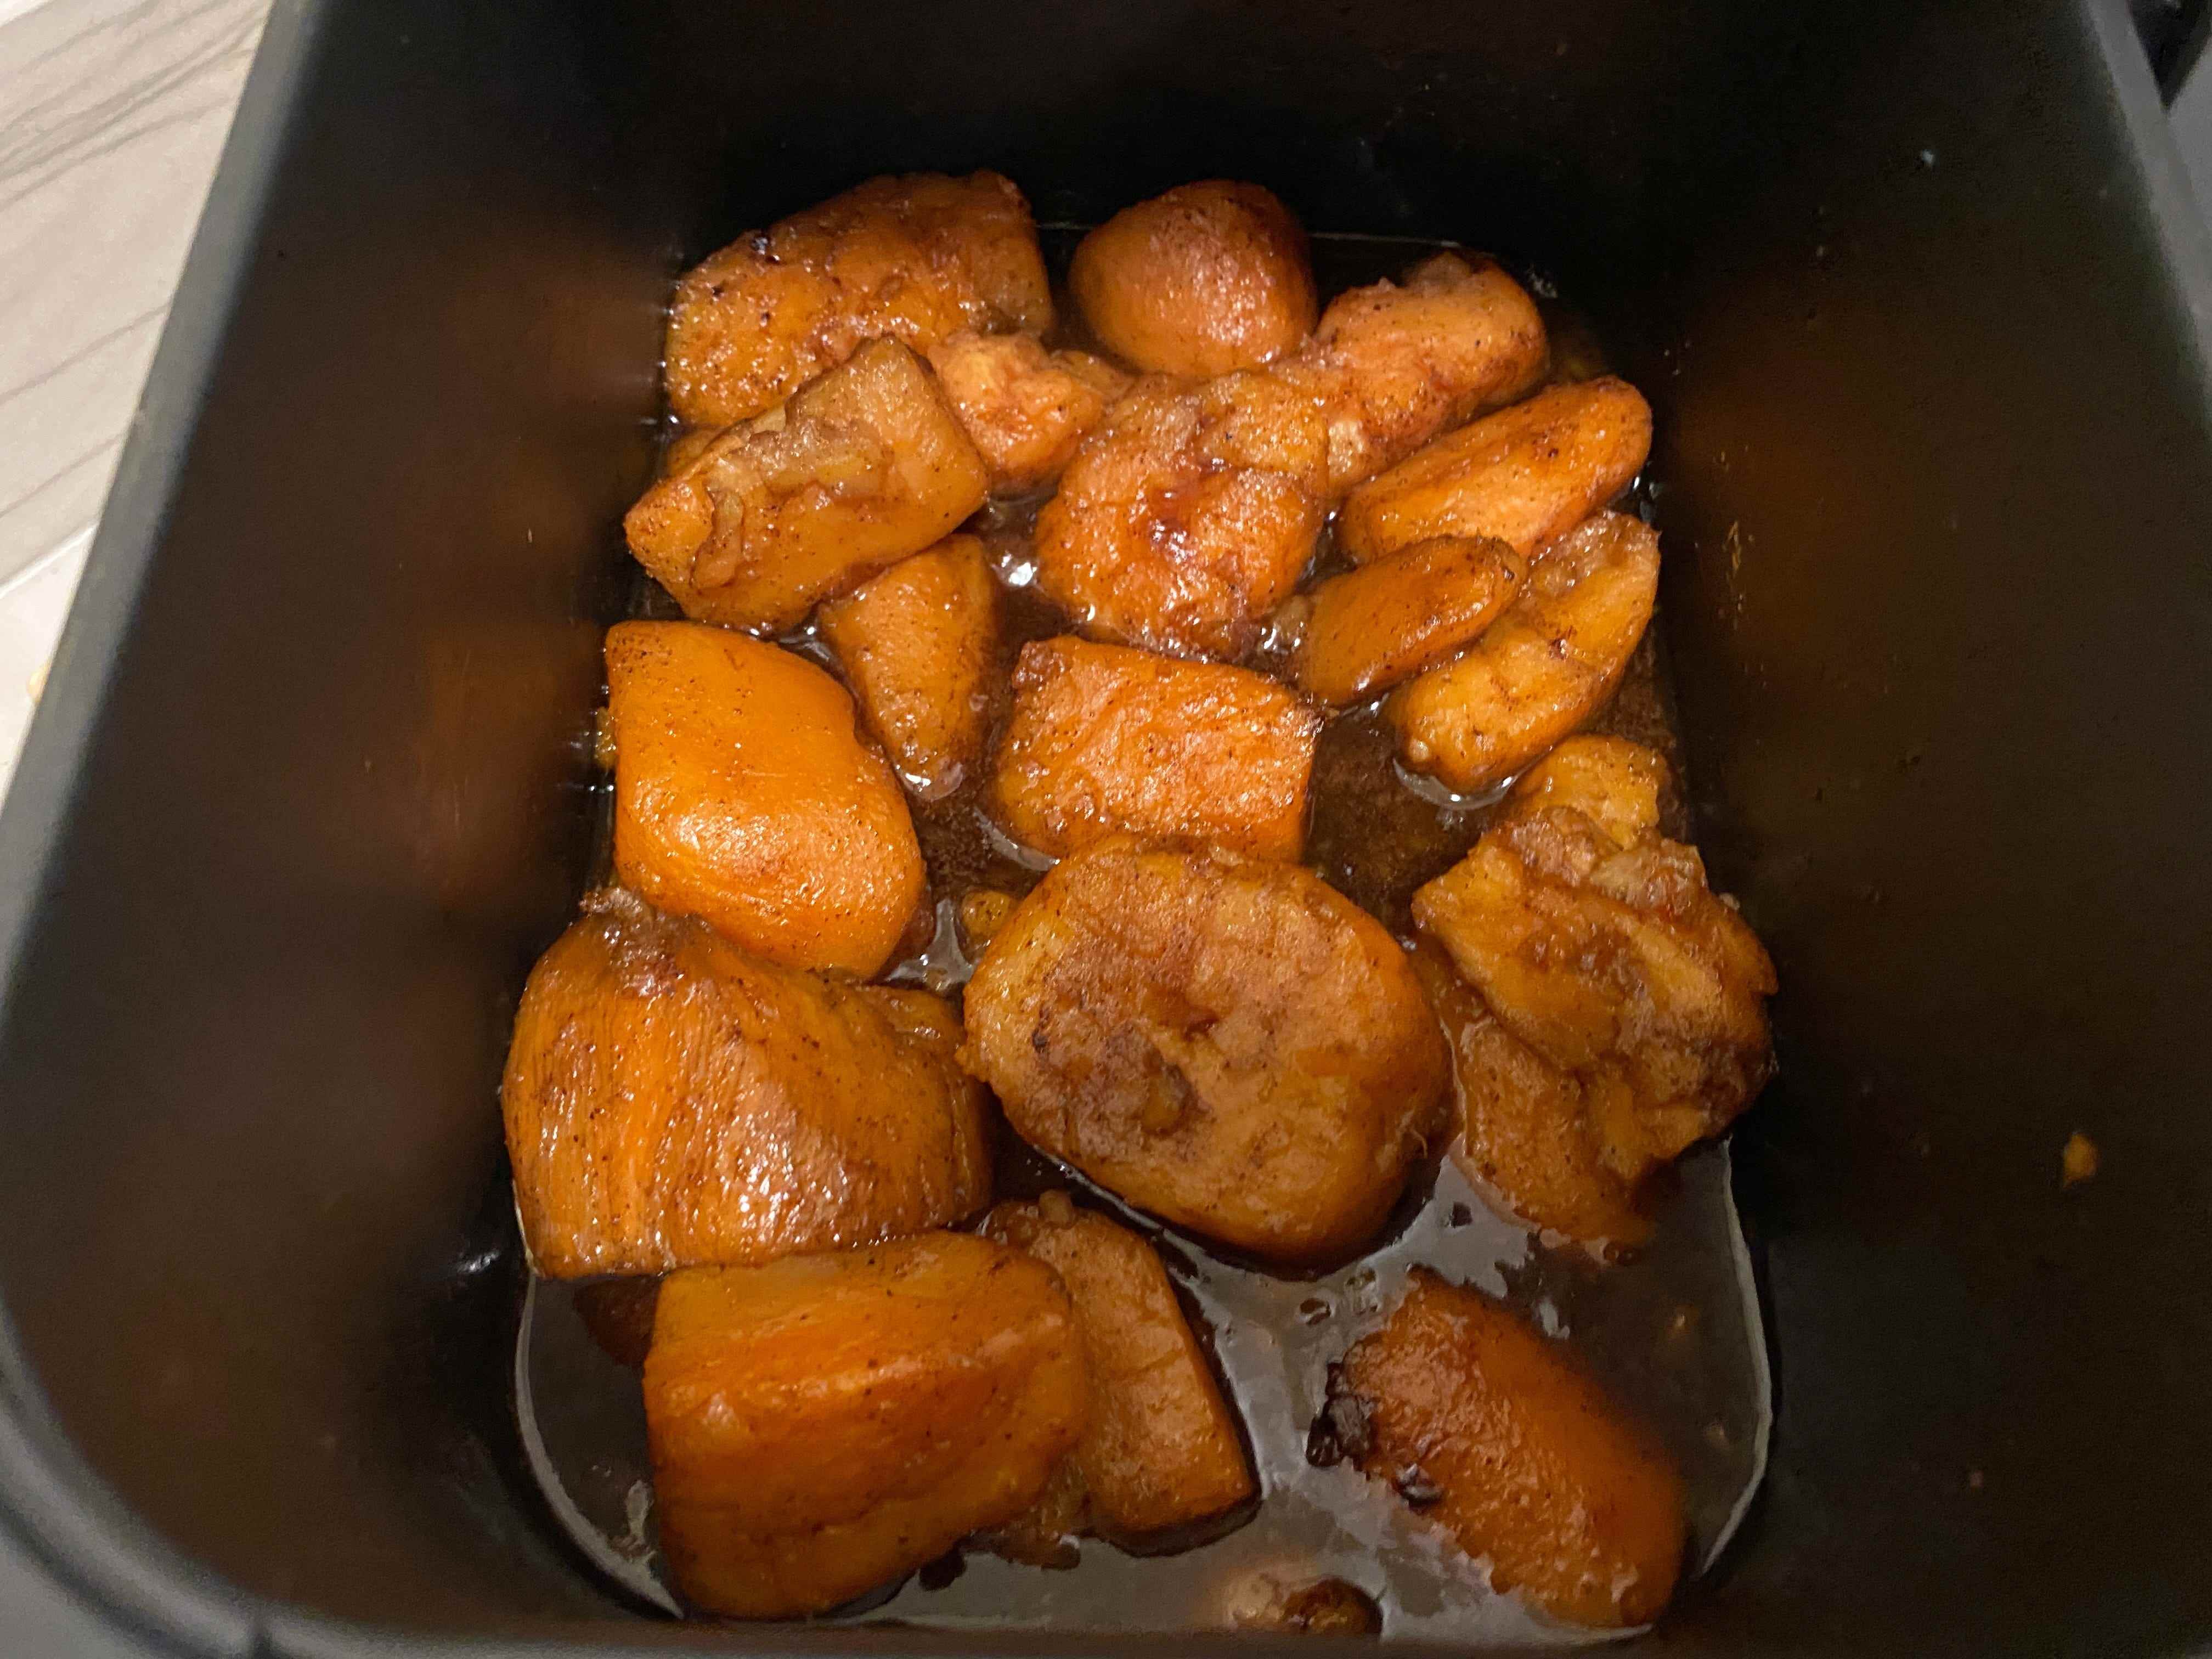 Süßkartoffeln mit Soße in einer Heißluftfritteuse